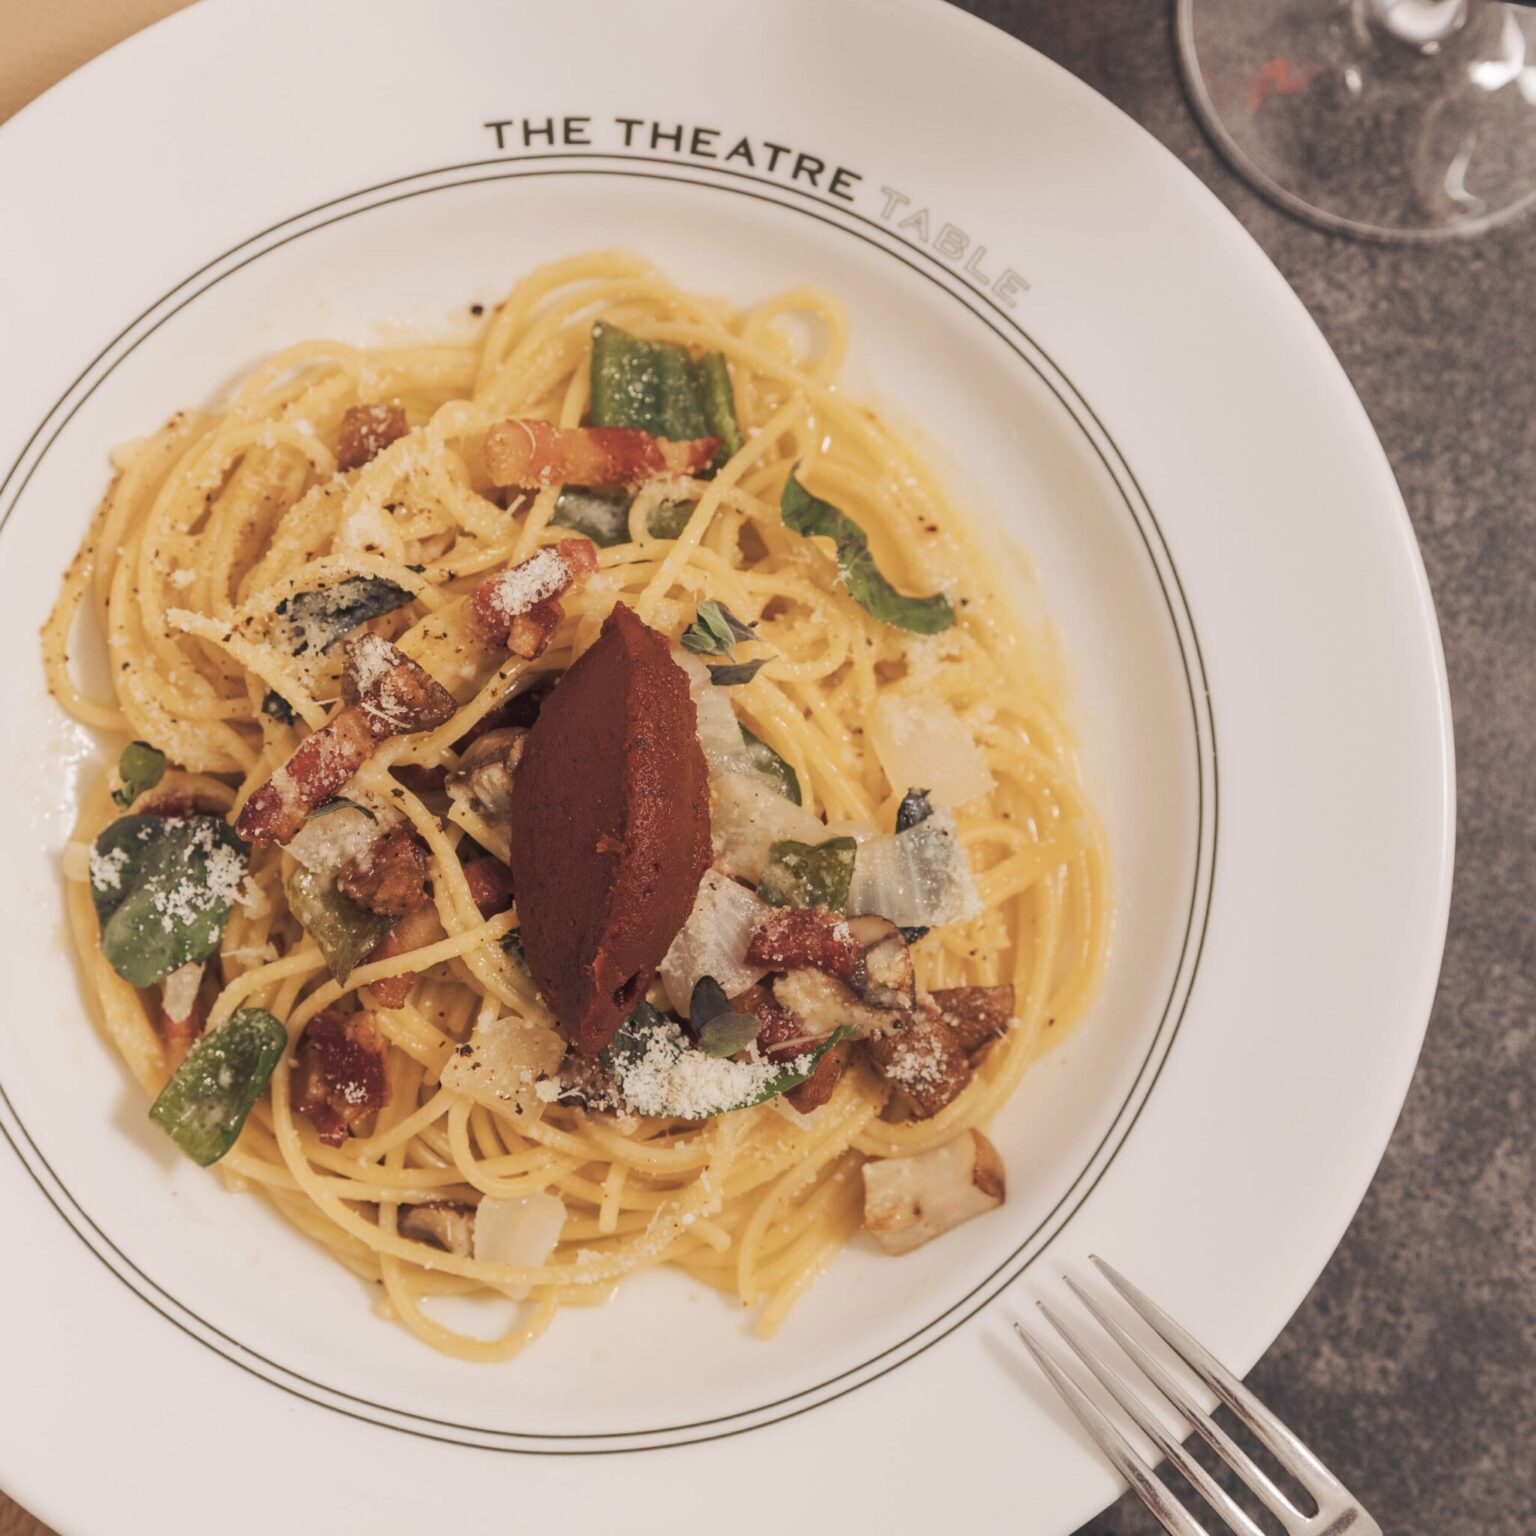 11F〈THE THEATRE TABLE〉の「デリカートナポリタン」1,800円。煮込んだトマトペーストを自分で混ぜて完成させる、新感覚のナポリタン。1日20食限定、ディナーのみ提供。